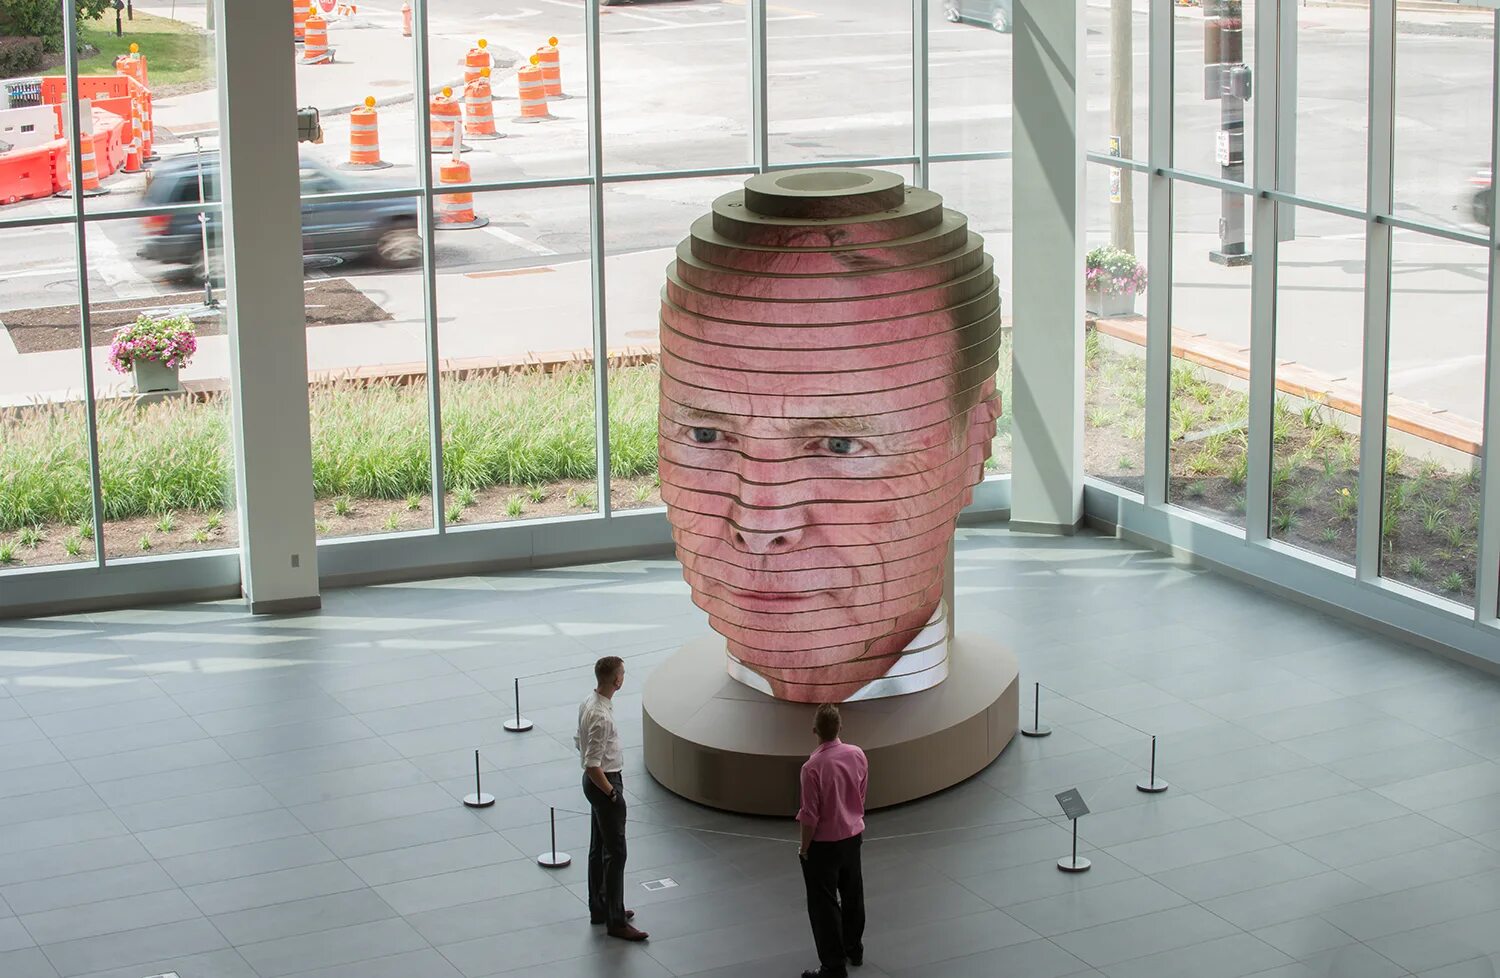 Говорящая голова как сделать. Инсталляция голова. Интерактивные арт объекты. Интерактивные скульптуры. Арт объект голова.